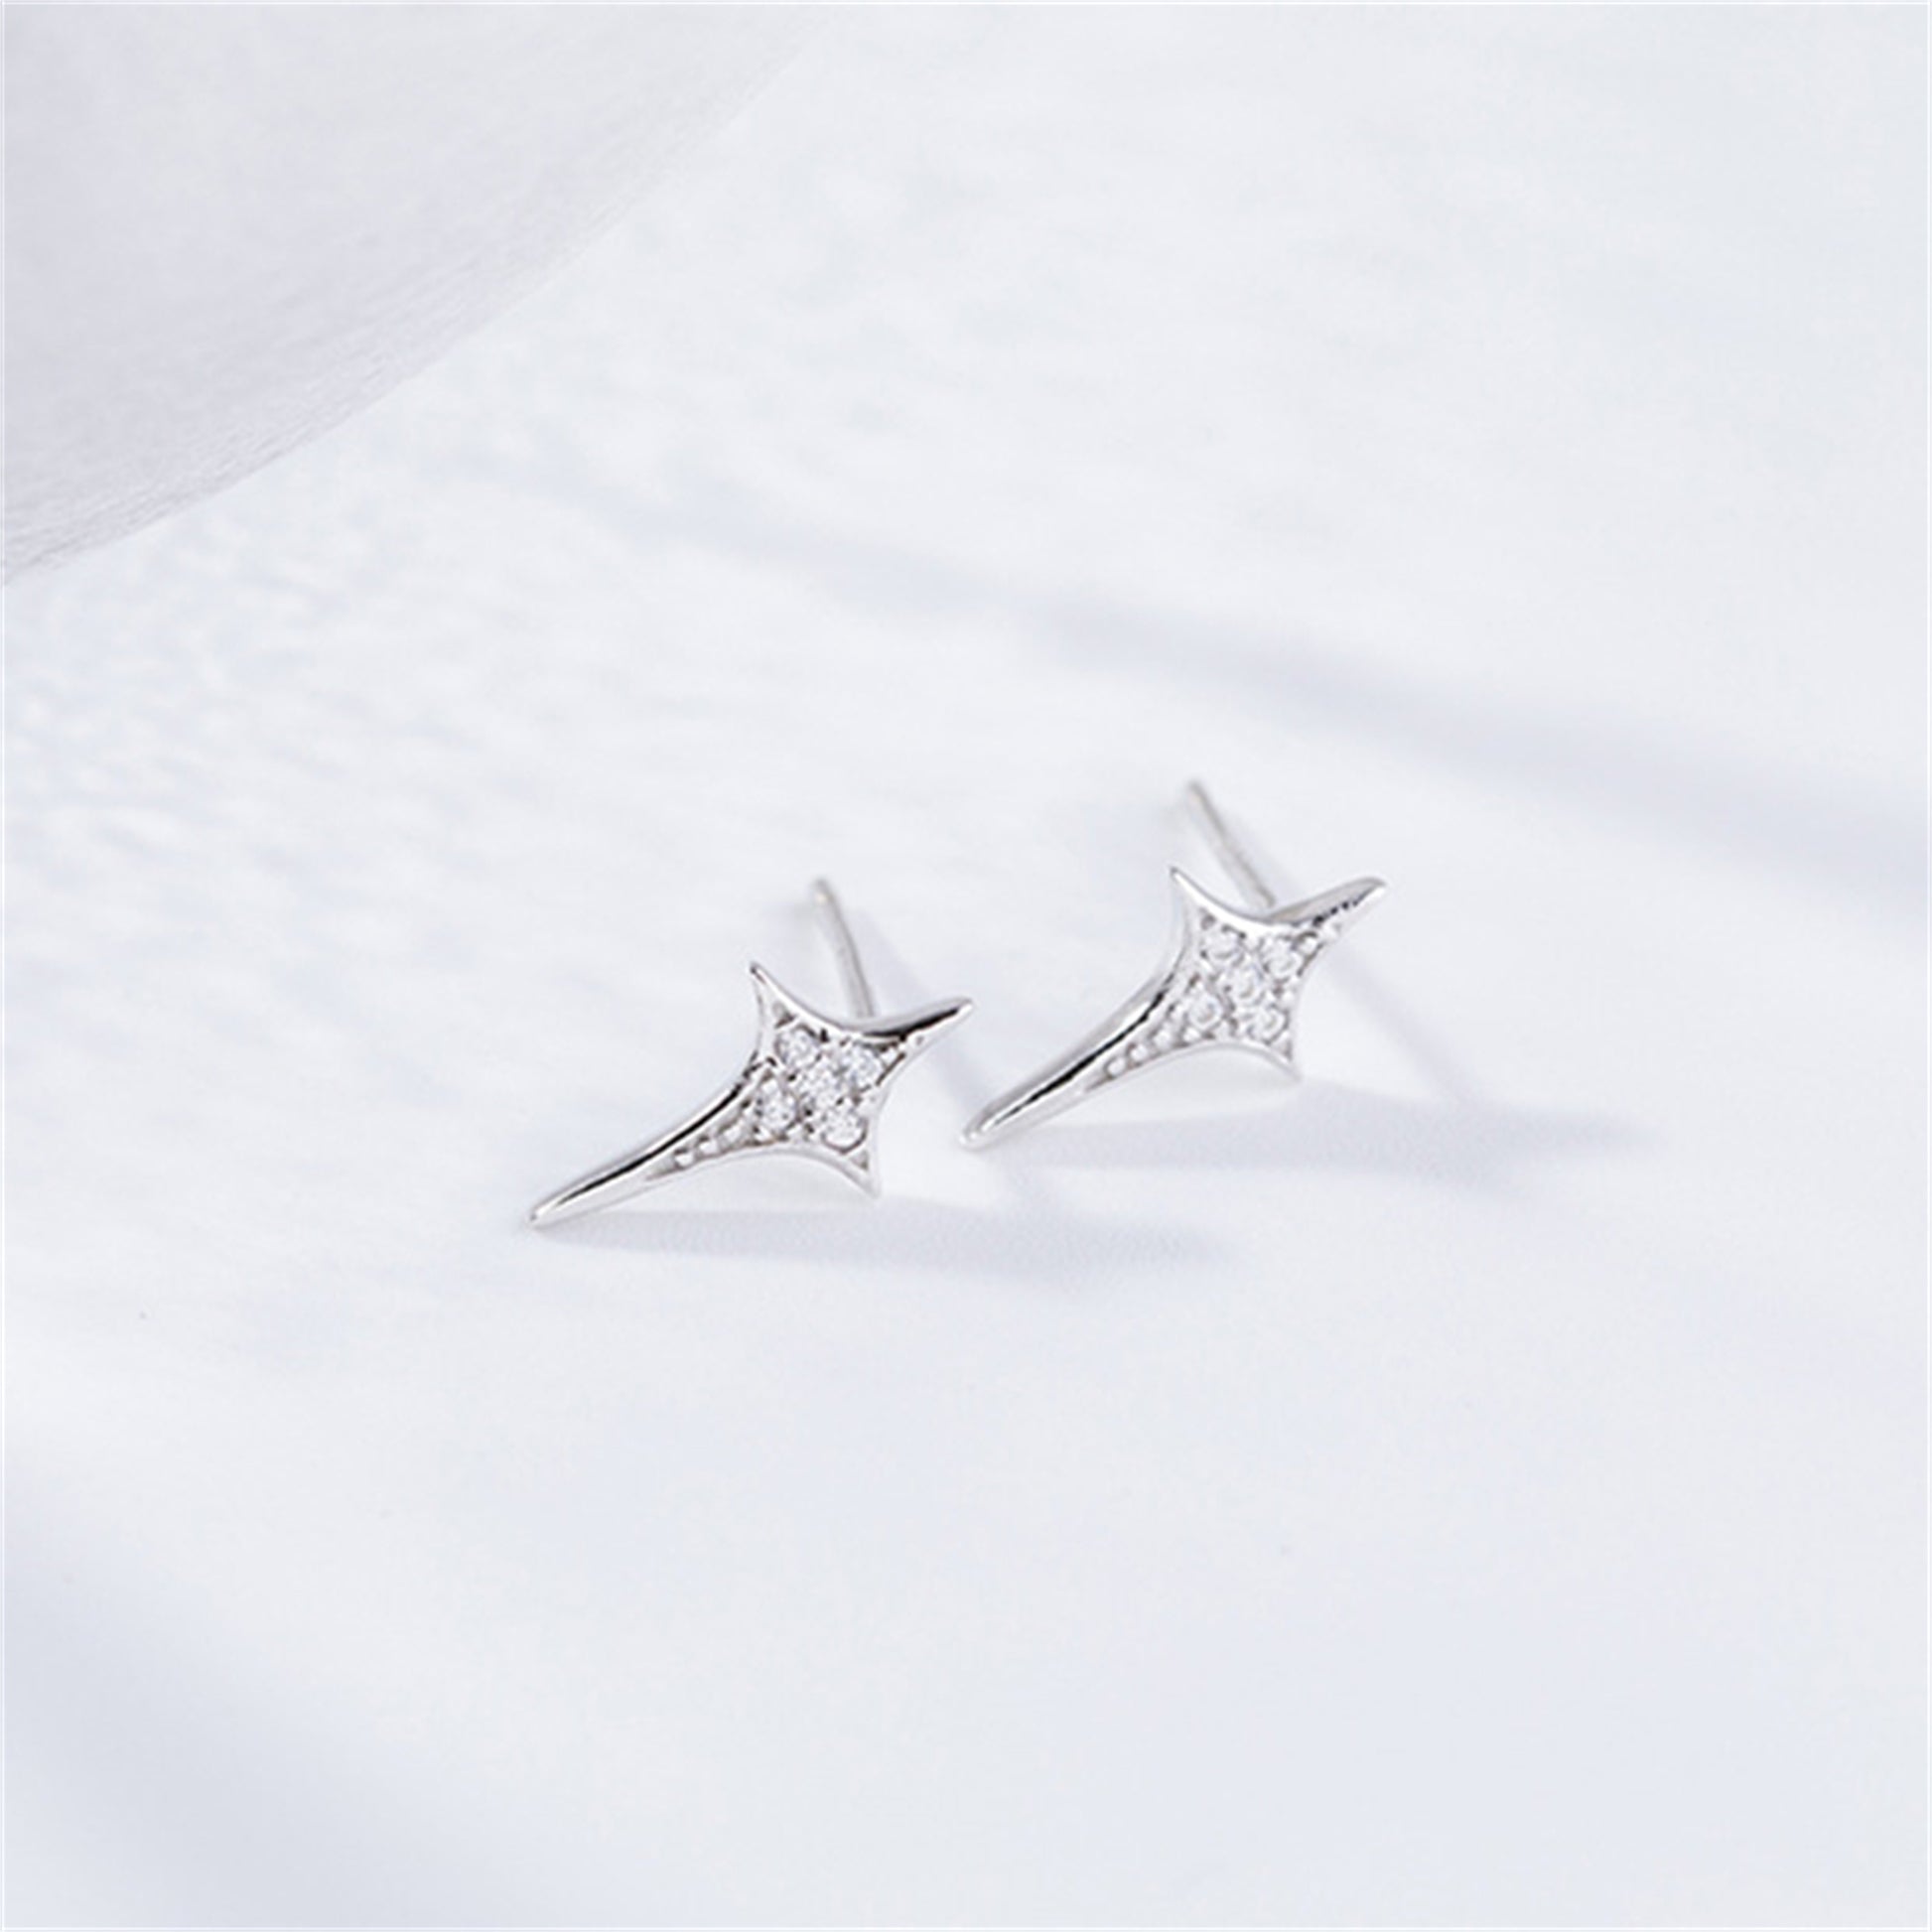 Rhodium on Sterling Silver Shiny 4 Point Pole Star Cross CZ Stud Piercing Earrings - sugarkittenlondon